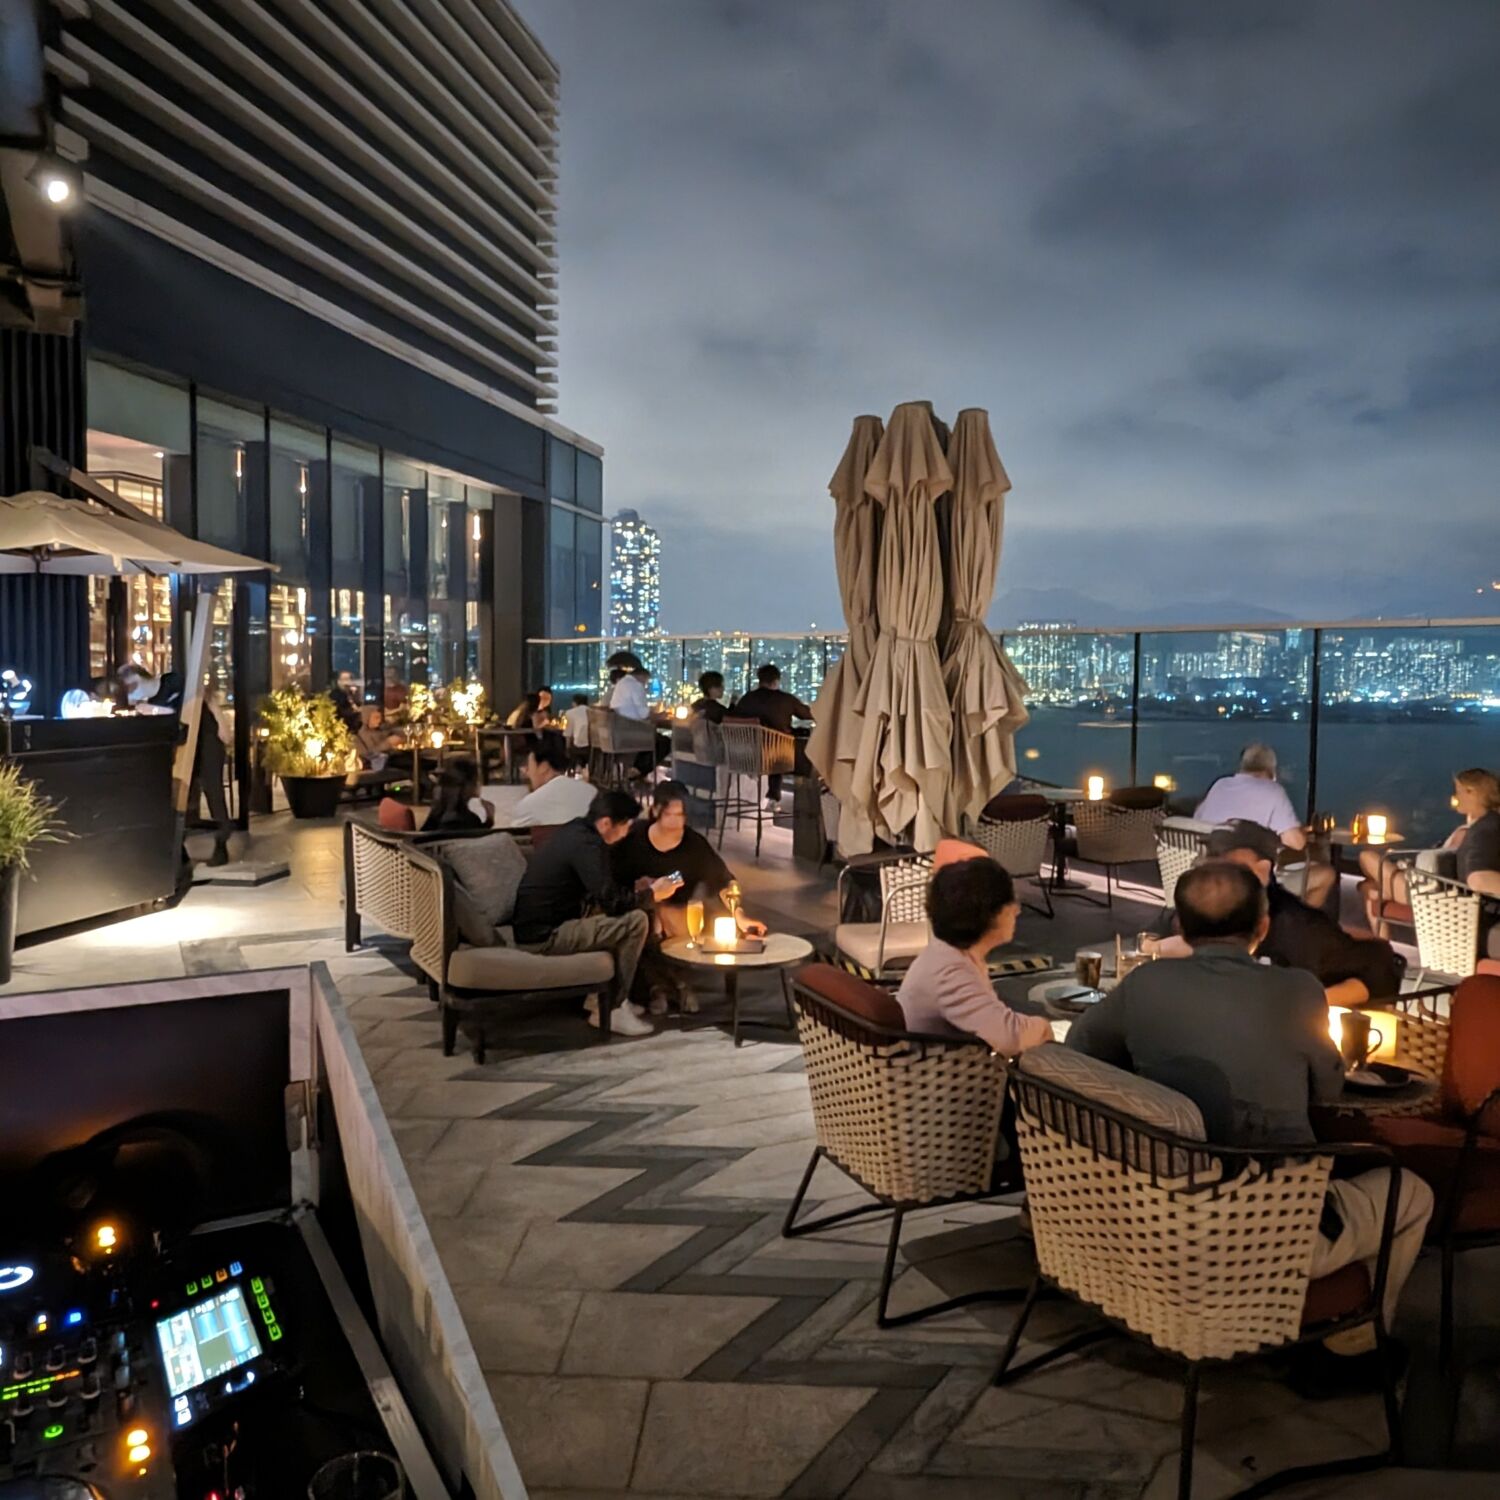 Hyatt Centric Victoria Harbour Hong Kong Cruise Restaurant & Bar 23F Outdoor Terrace